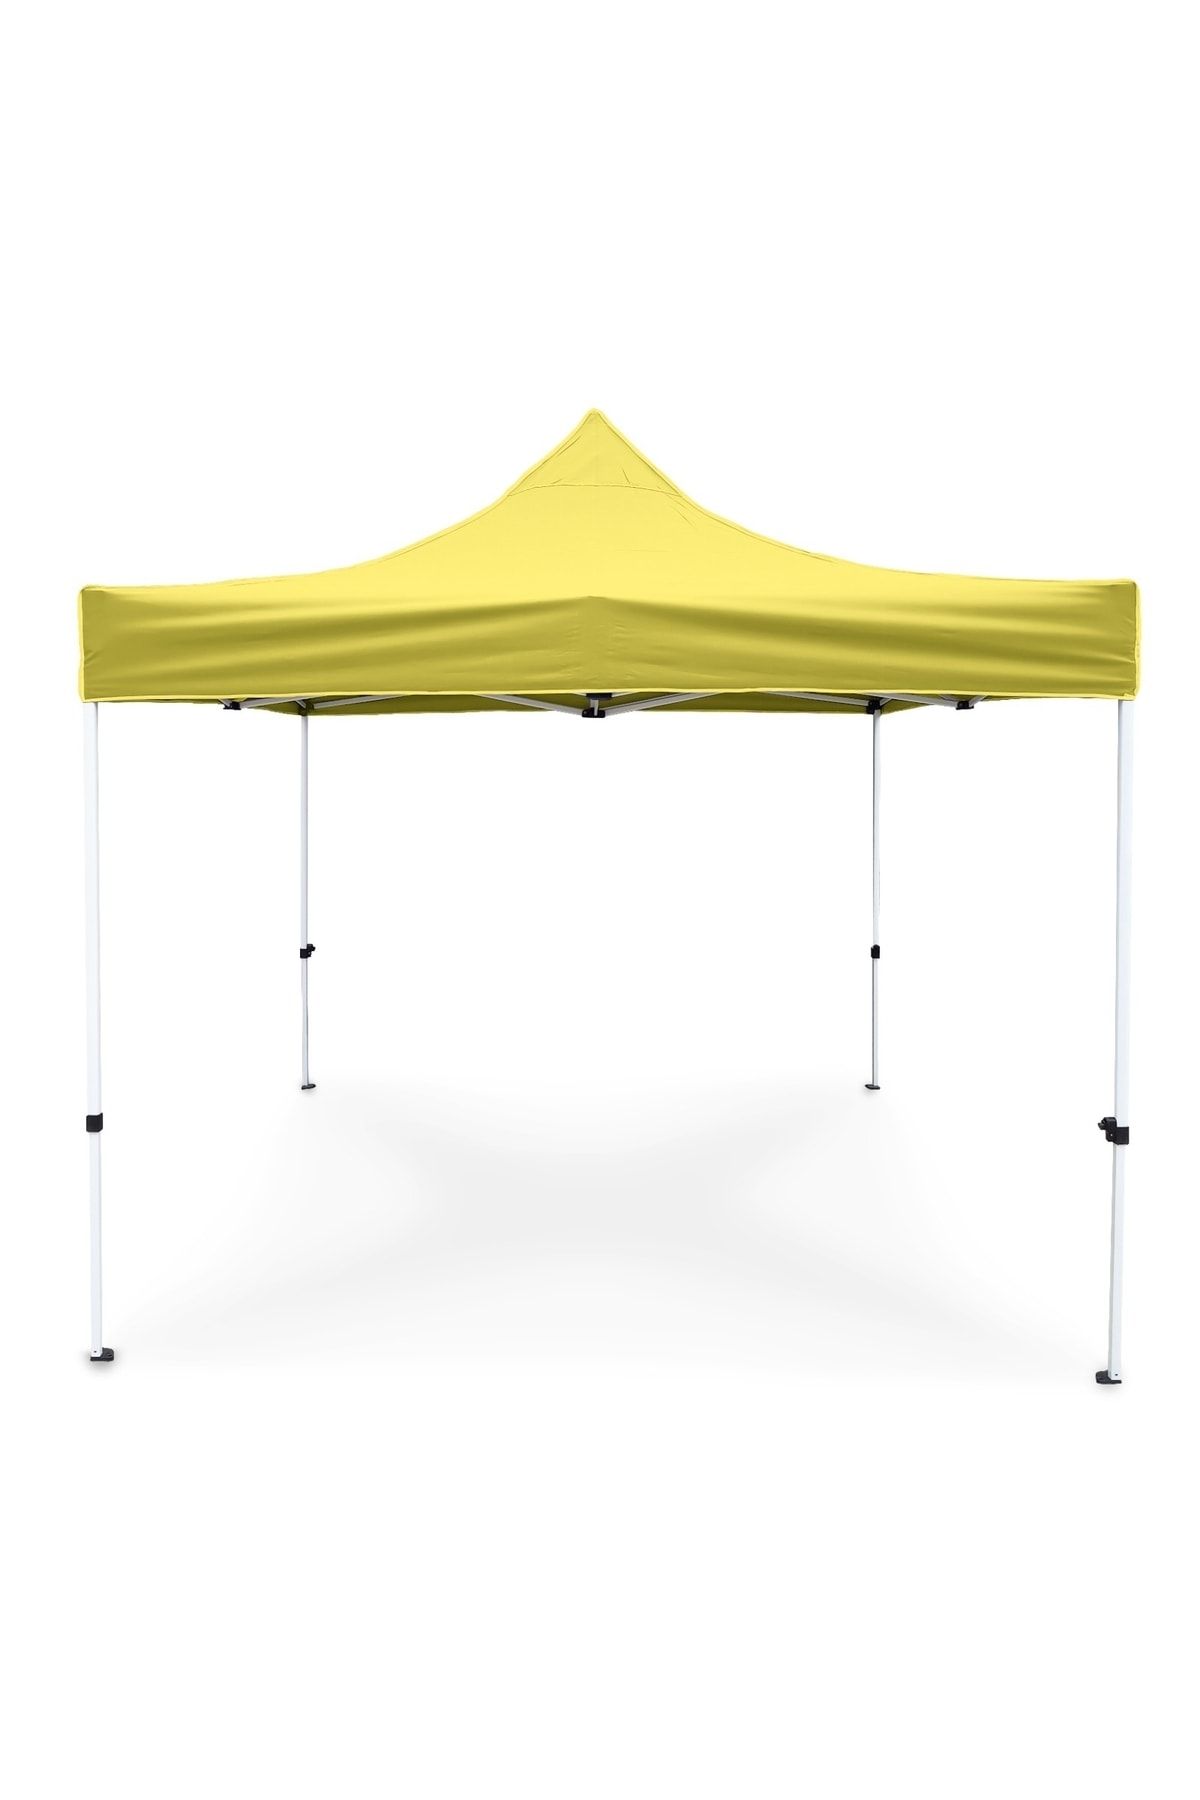 ProKamp Bahçe Çadırı 3x3 Outdoor Çadır Çardak Gazebo 3x3m Gölgelik Tente Fuar Tanıtım Organizasyon Çadırı